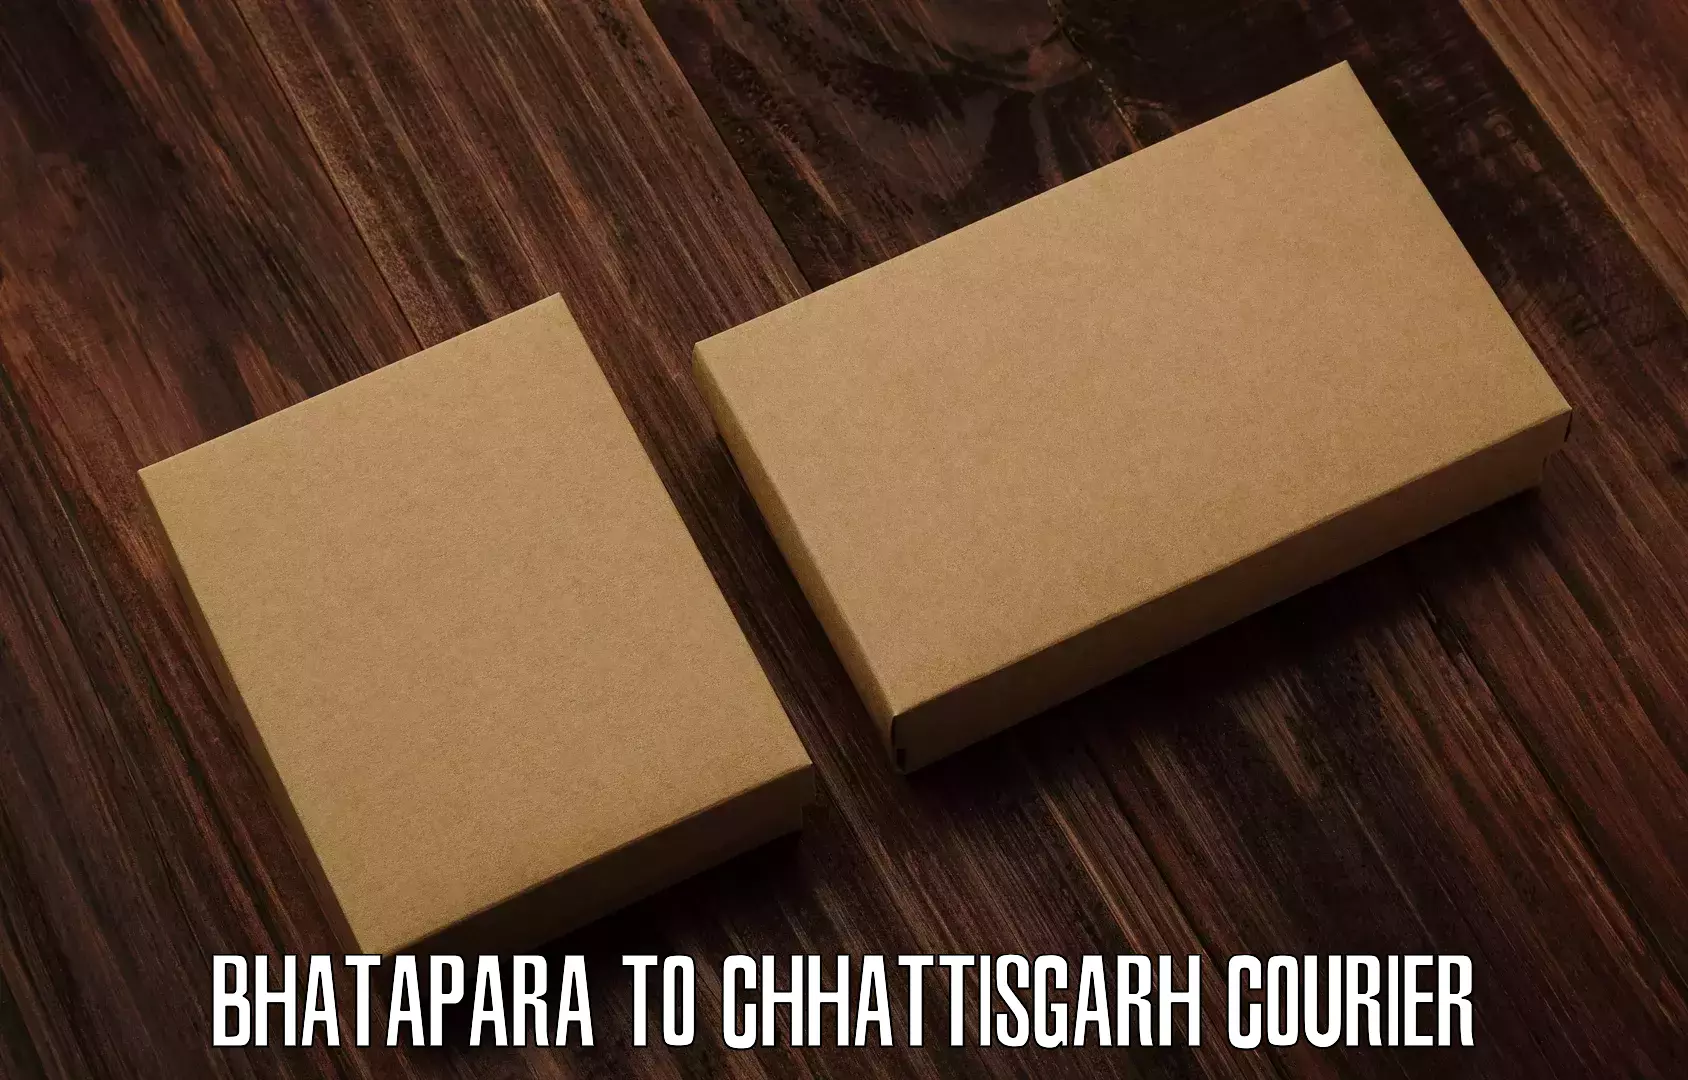 International shipping in Bhatapara to Sakti